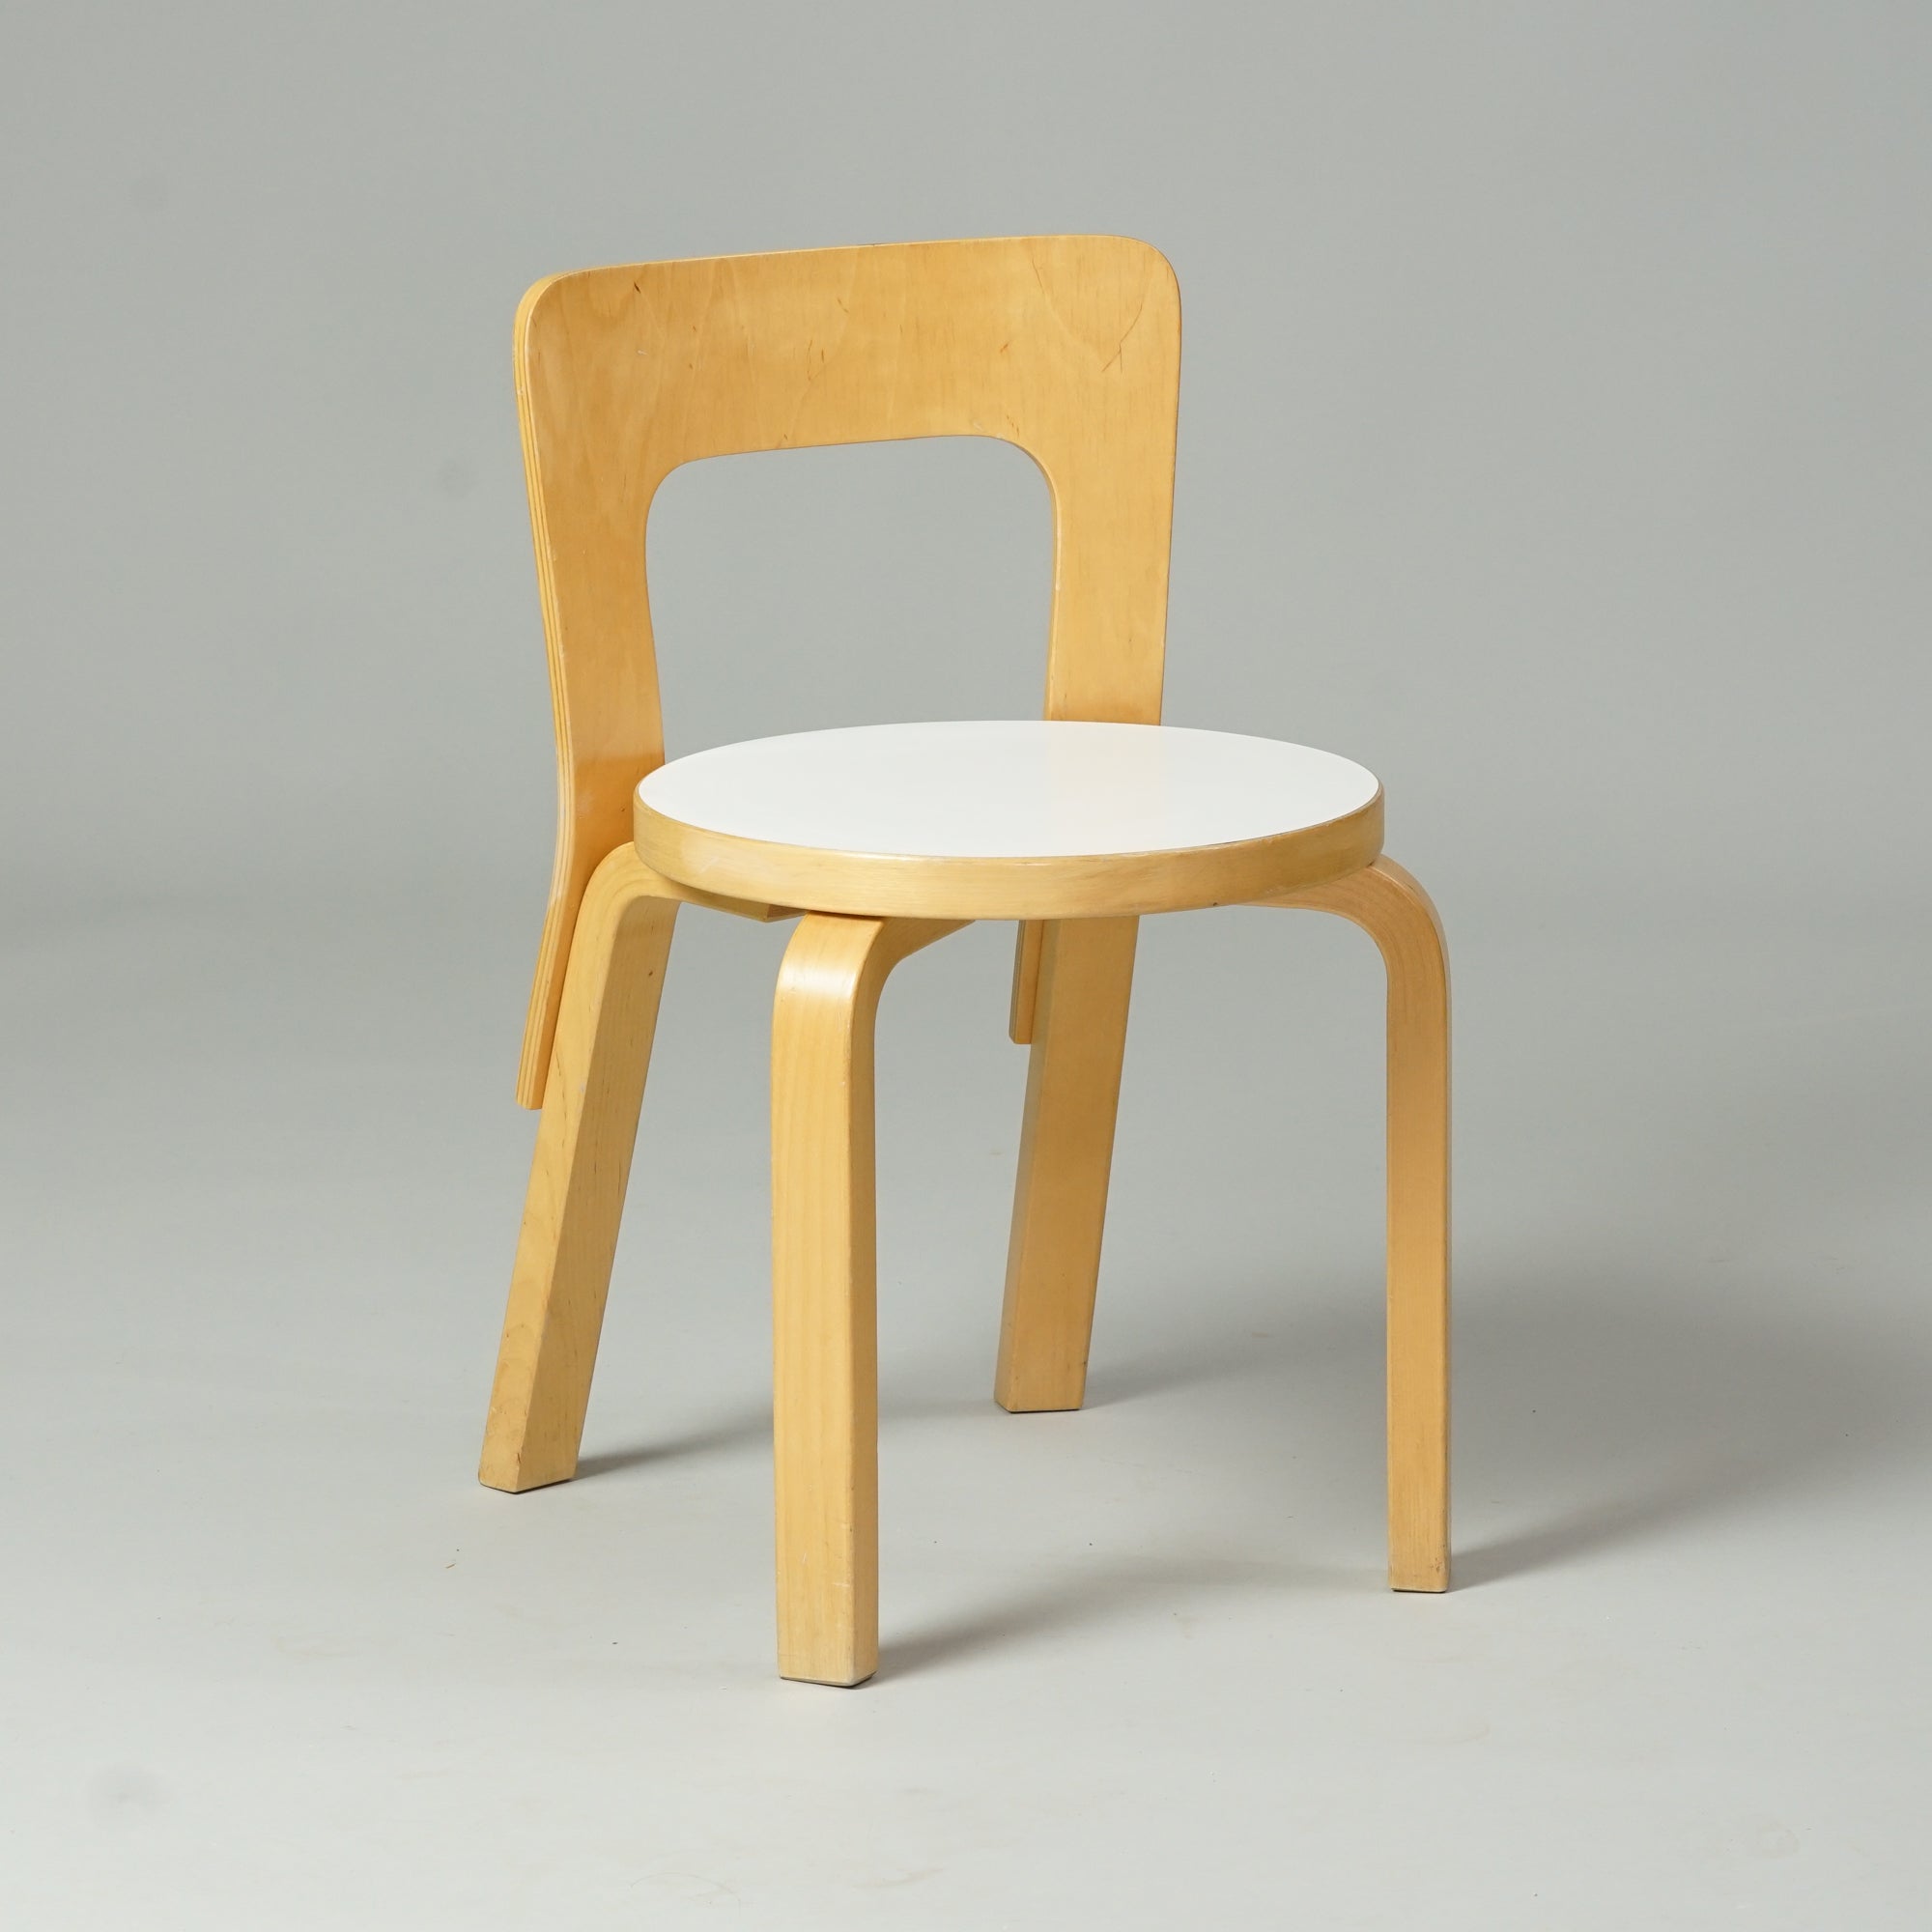 Koivusta tehty tuoli, jossa pyöreä istuin valkoisella linoleum päällisellä. Tuolissa on selkänoja ja neljä jalkaa.